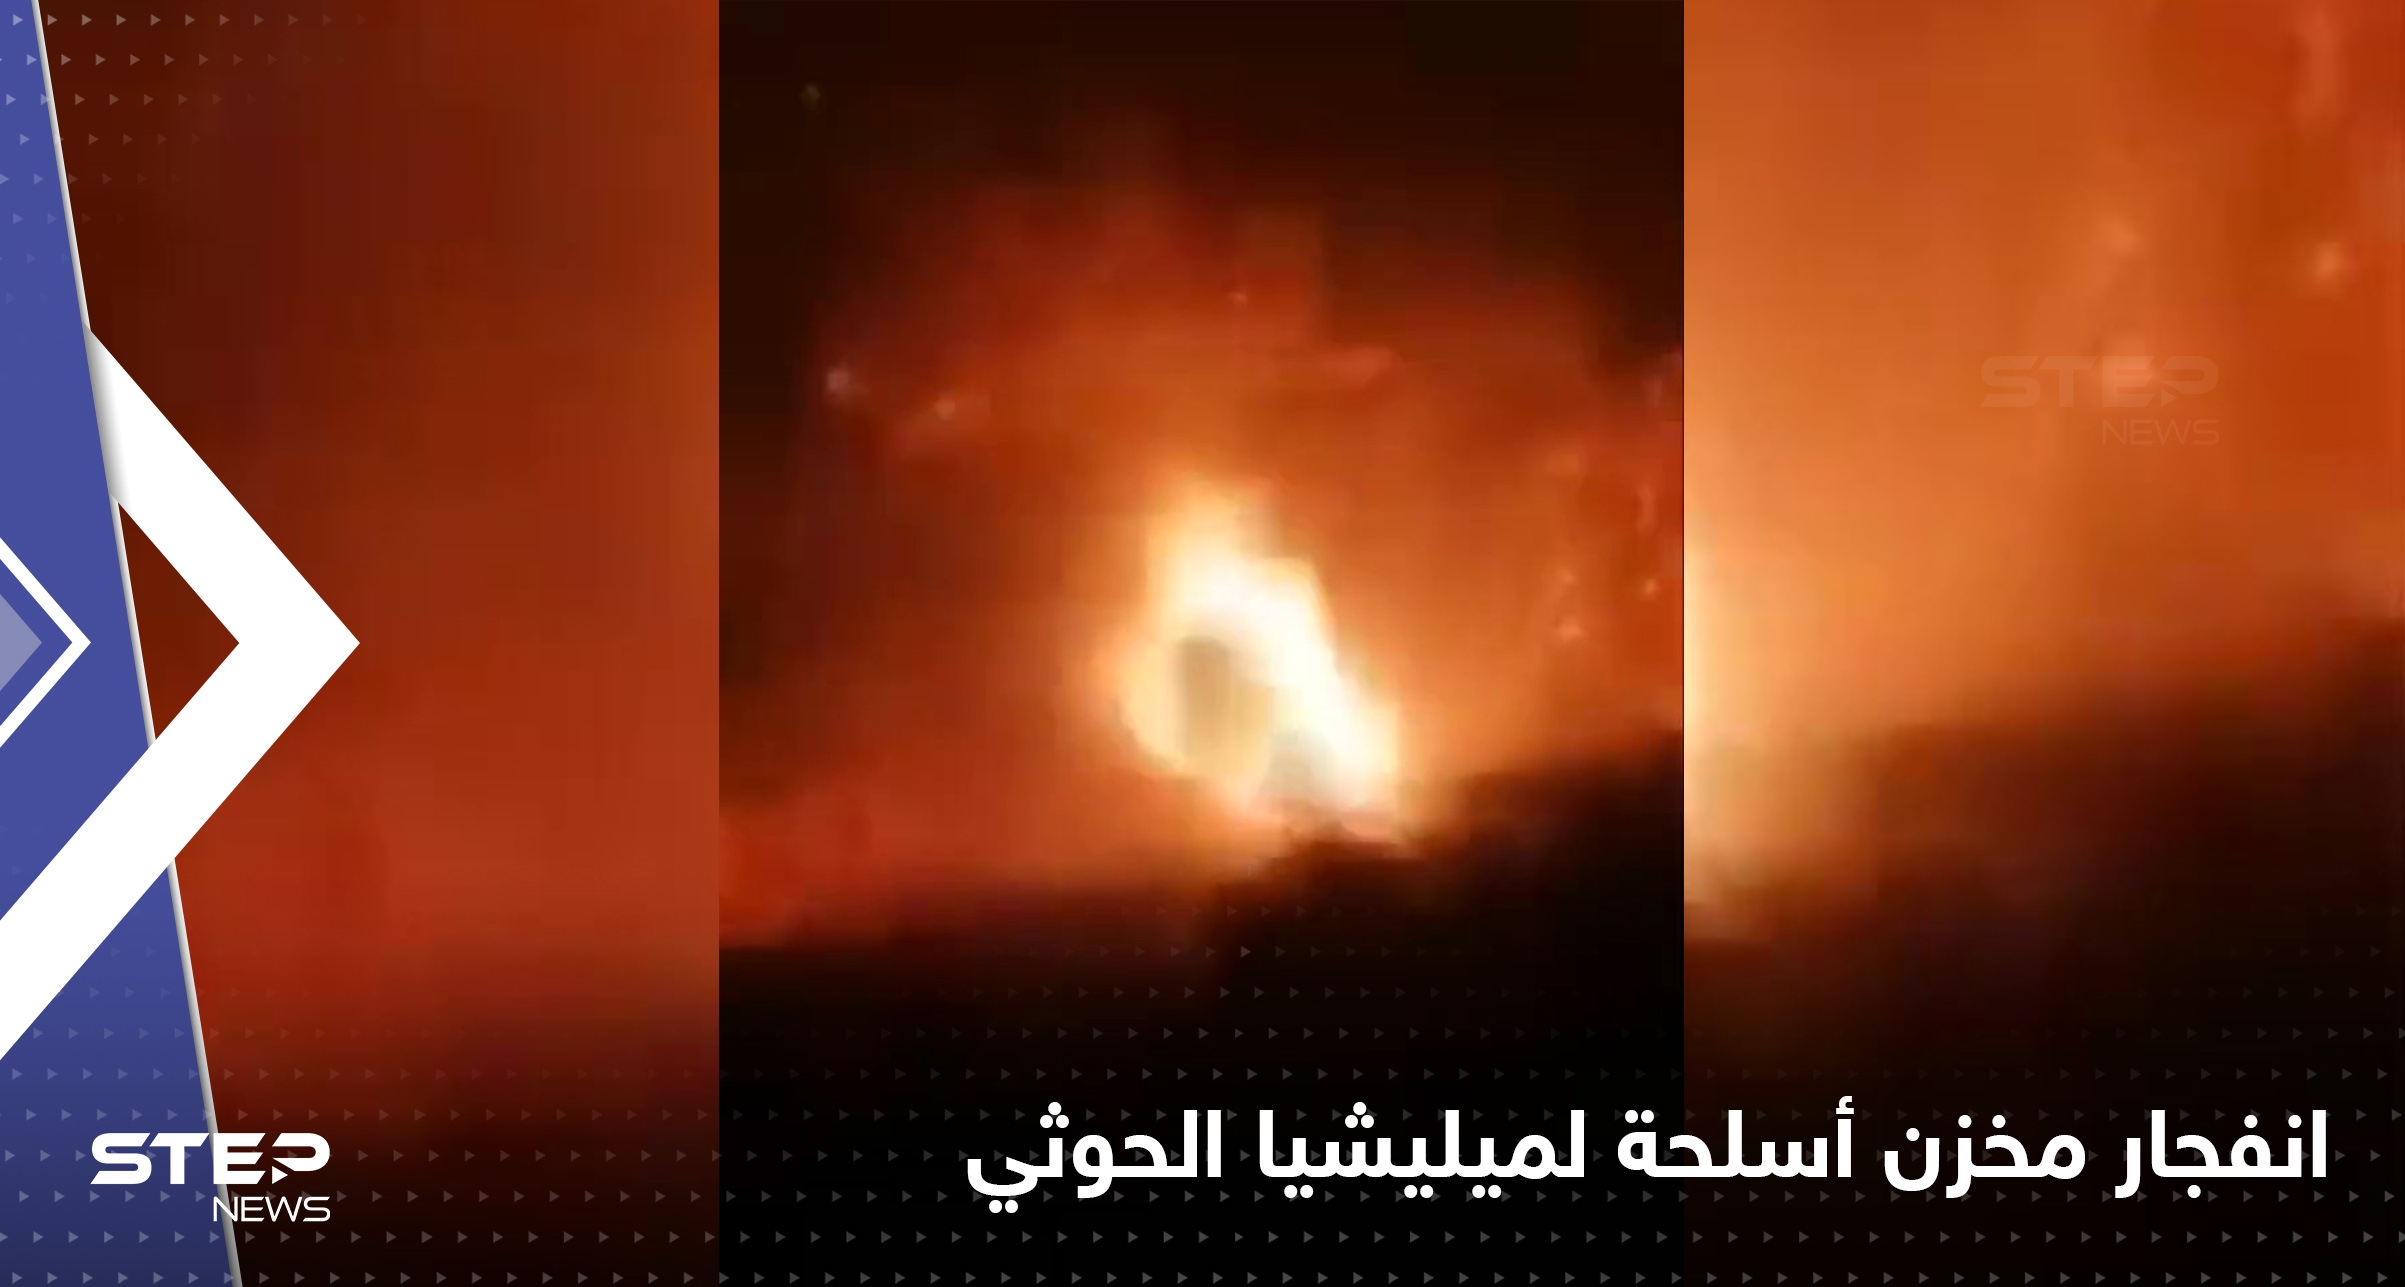 فيديو لانفجار مخزن أسلحة لميليشيا الحوثي في صنعاء بعد فشله في إطلاق صاروخ باليستي